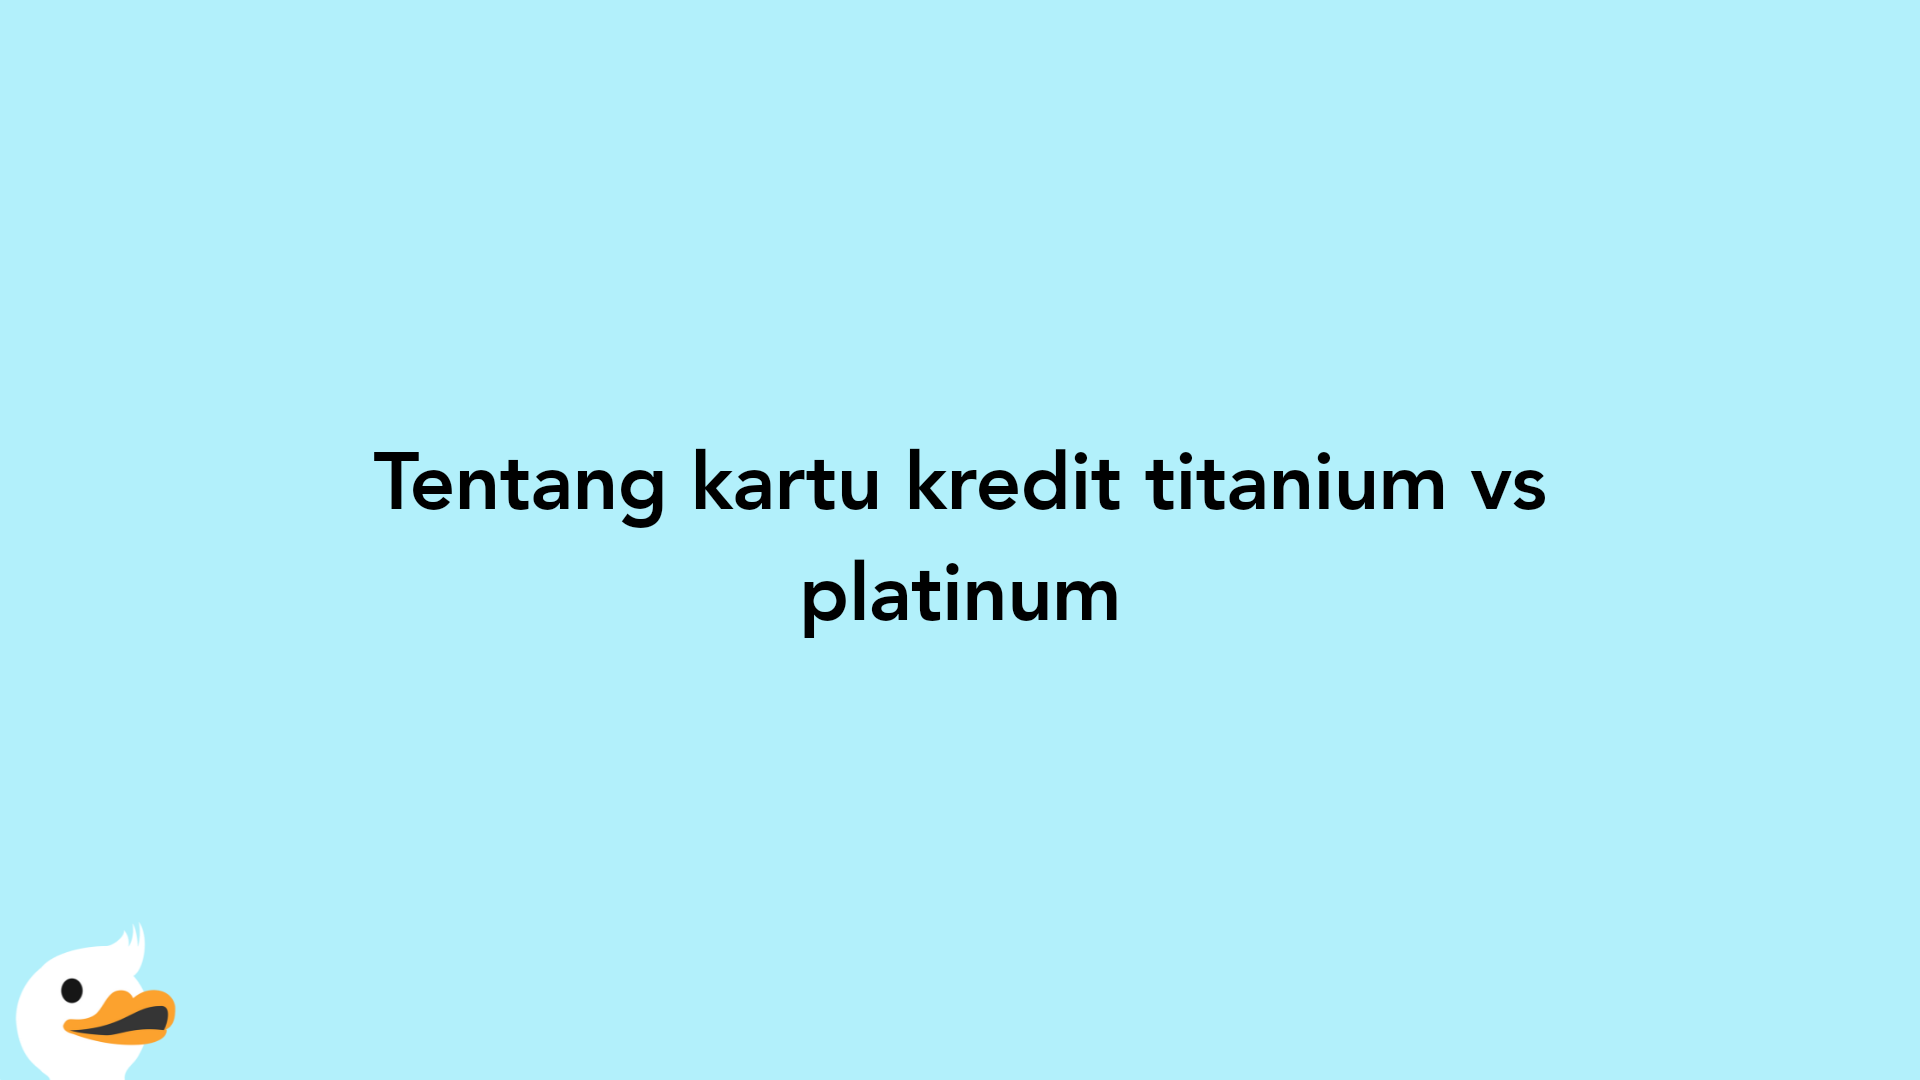 Tentang kartu kredit titanium vs platinum